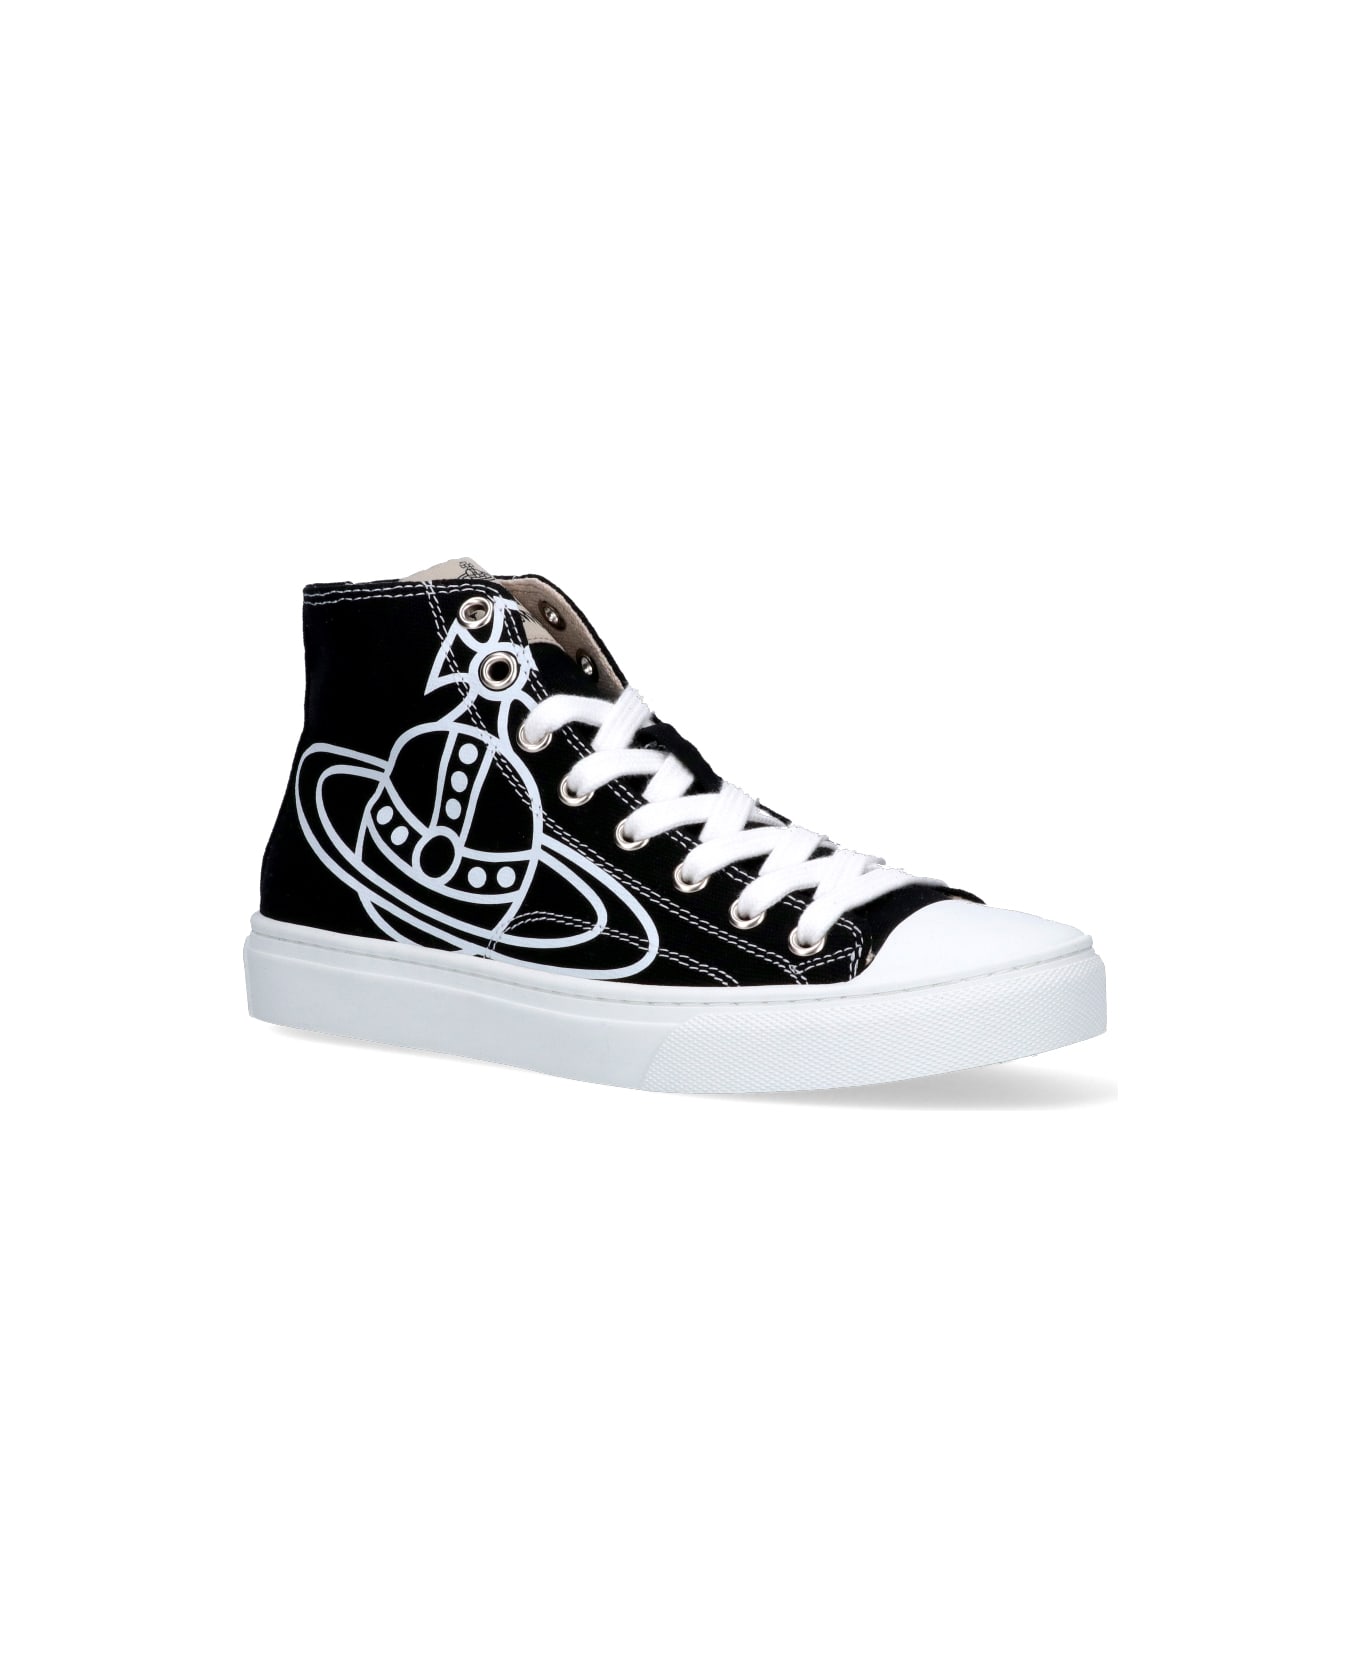 Vivienne Westwood 'plimsoll' High Sneakers - Black   スニーカー